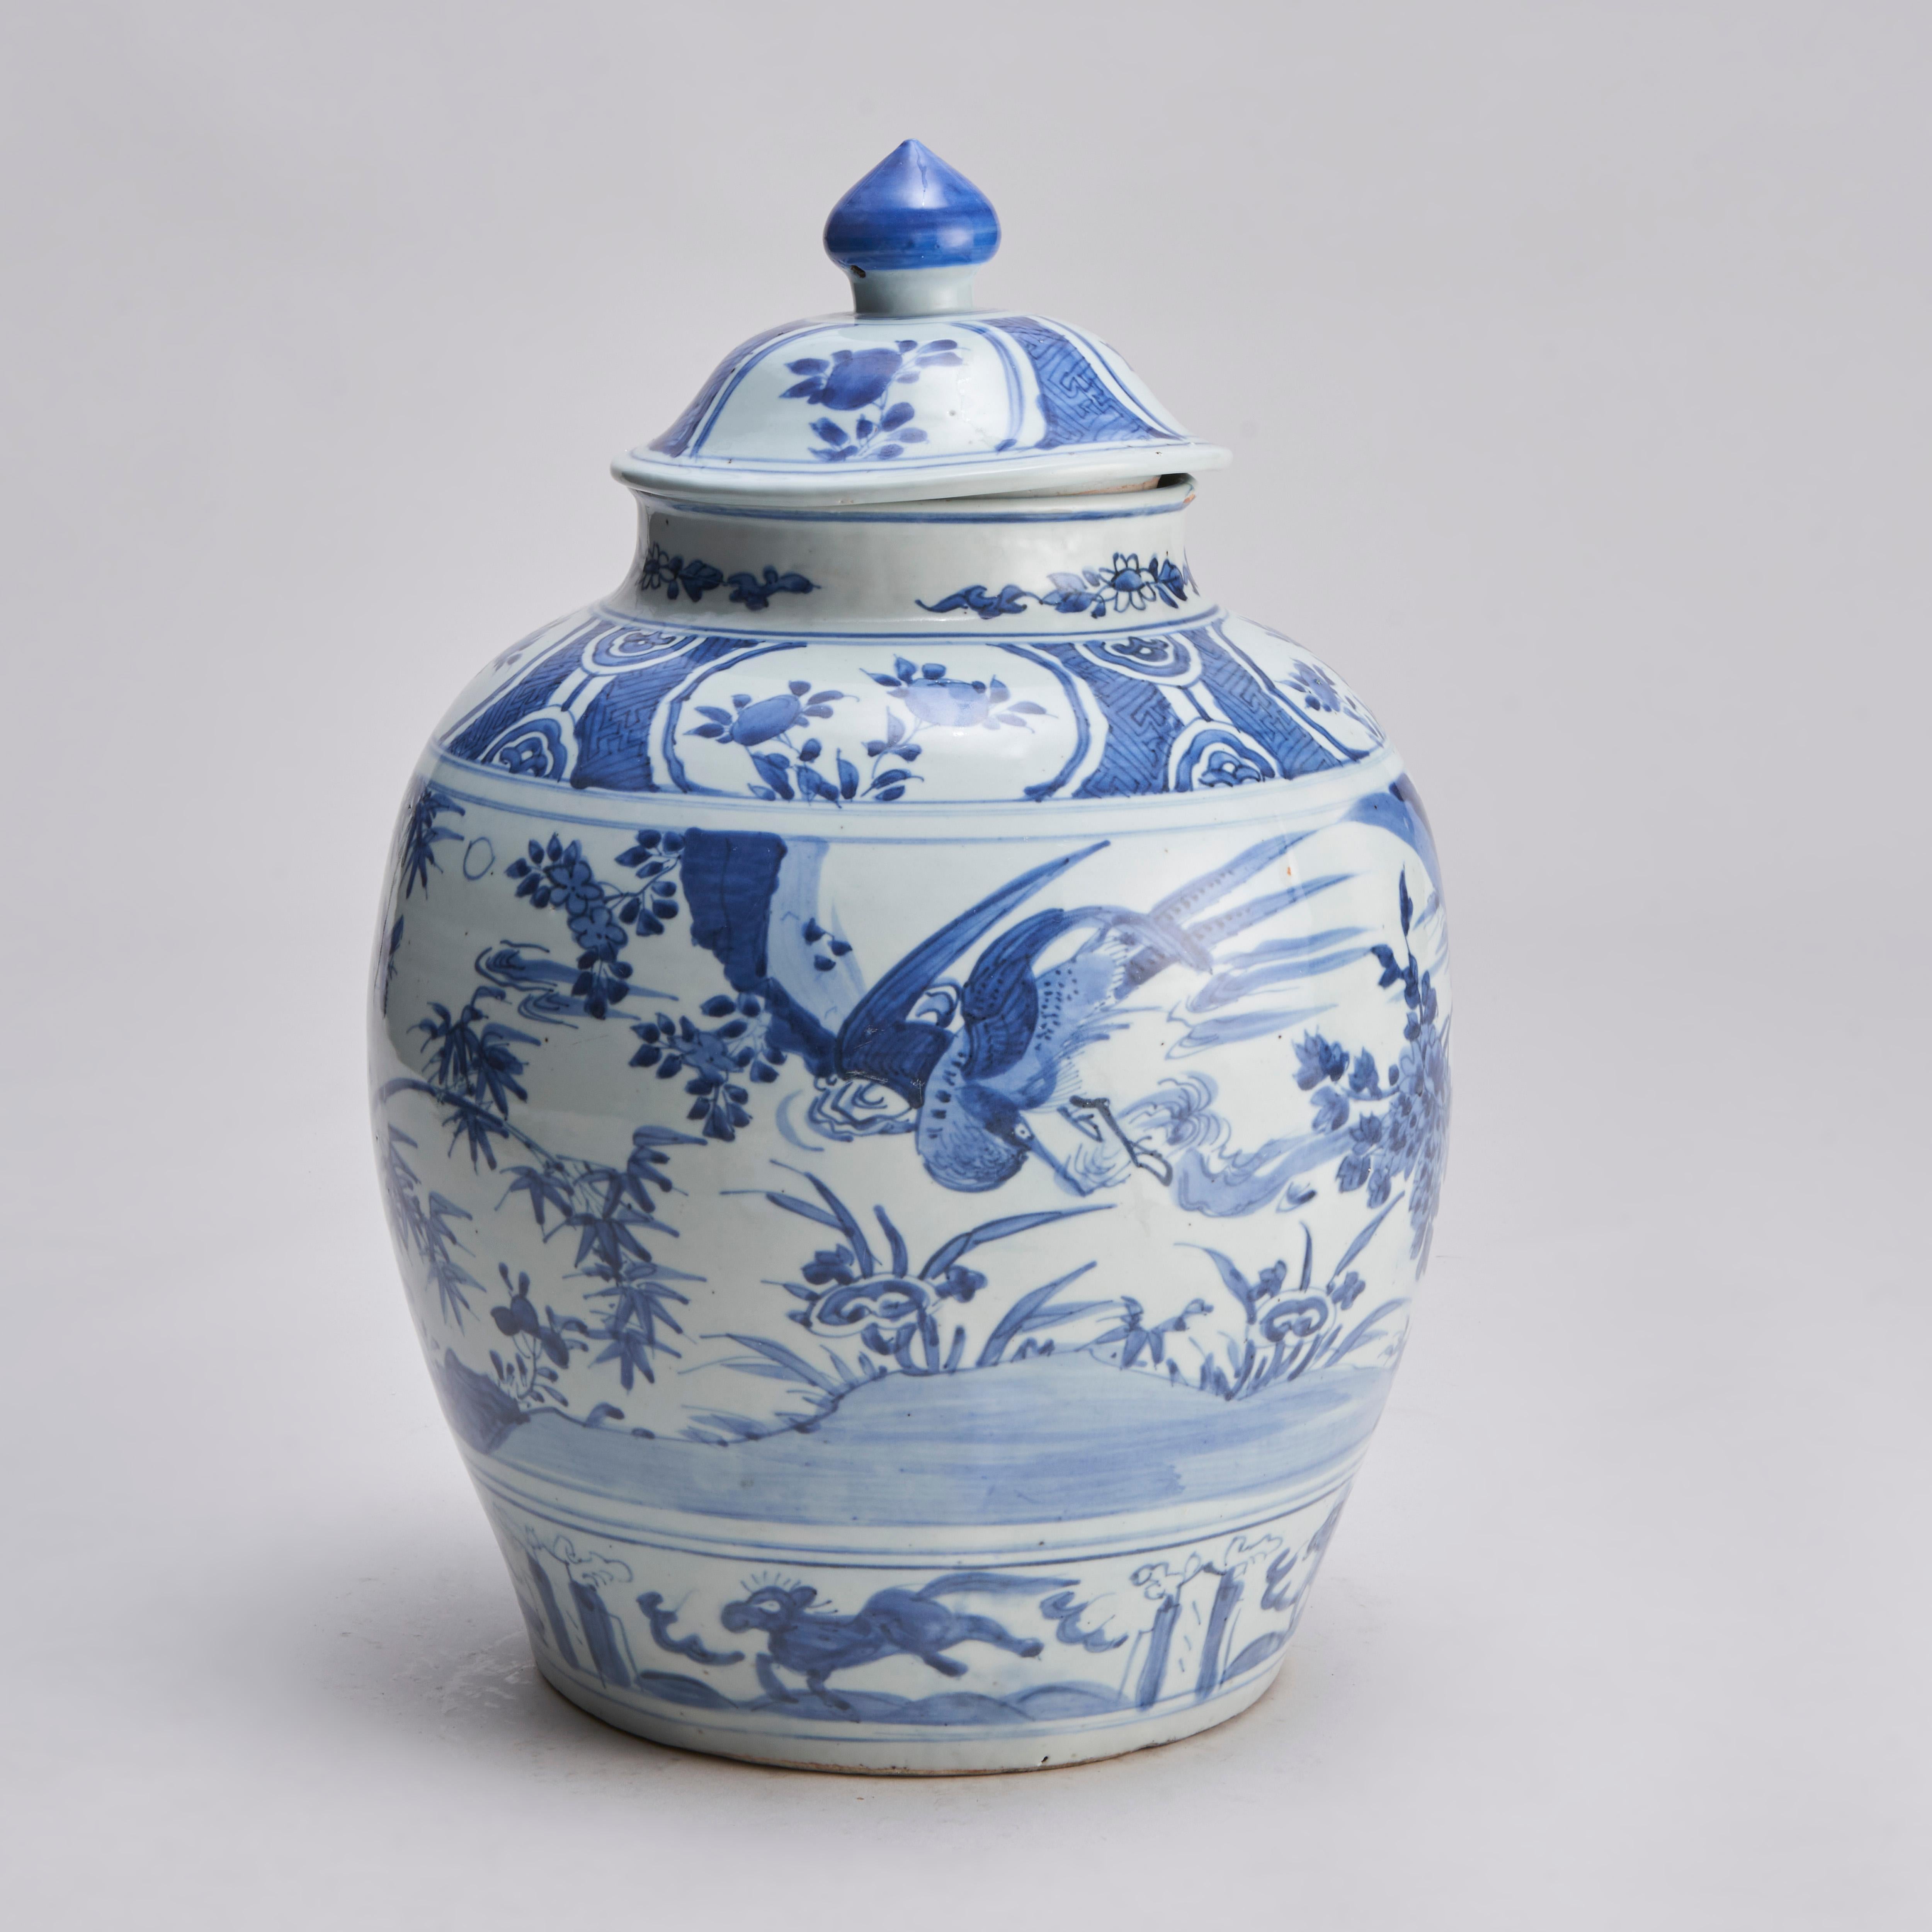 Tiré de notre collection de porcelaines chinoises anciennes, ce pot et son couvercle bleu et blanc du début du XIXe siècle présentent un décor enveloppant de faisans parmi des pivoines et des bambous, la bordure inférieure est ornée d'un motif de